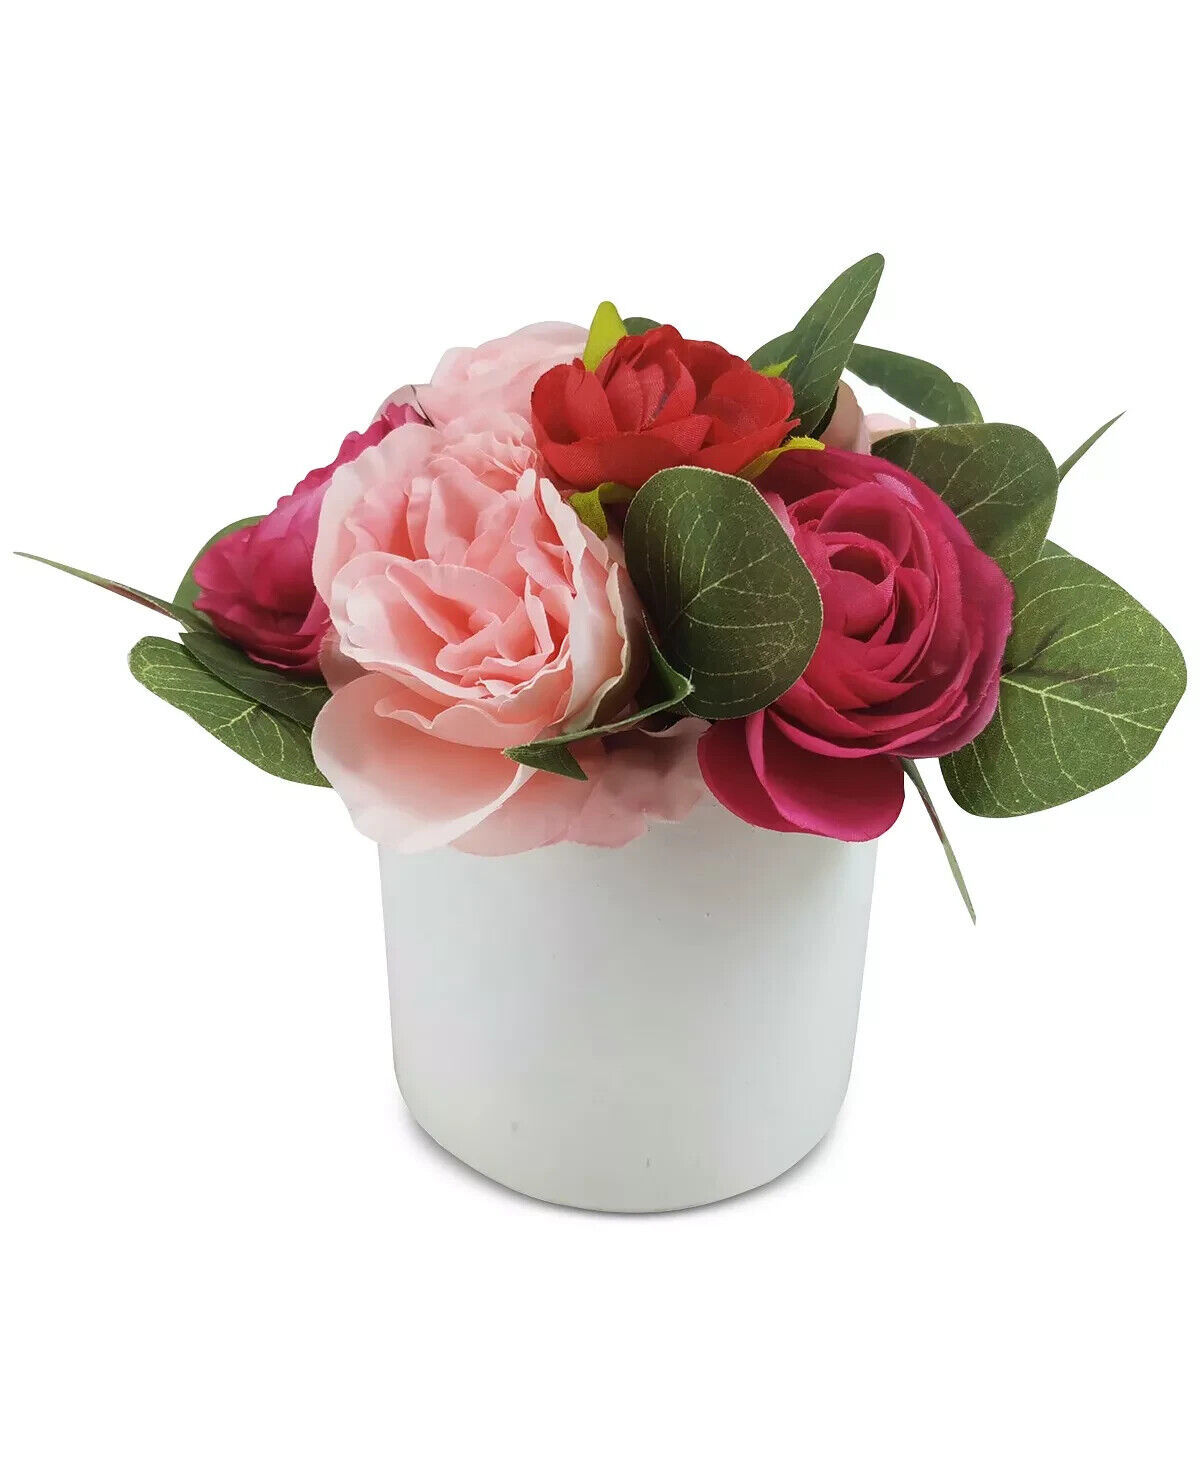 MARTHA STEWART Valentine's Day Red & Pink Ranunculus Centerpiece NEW - $17.99